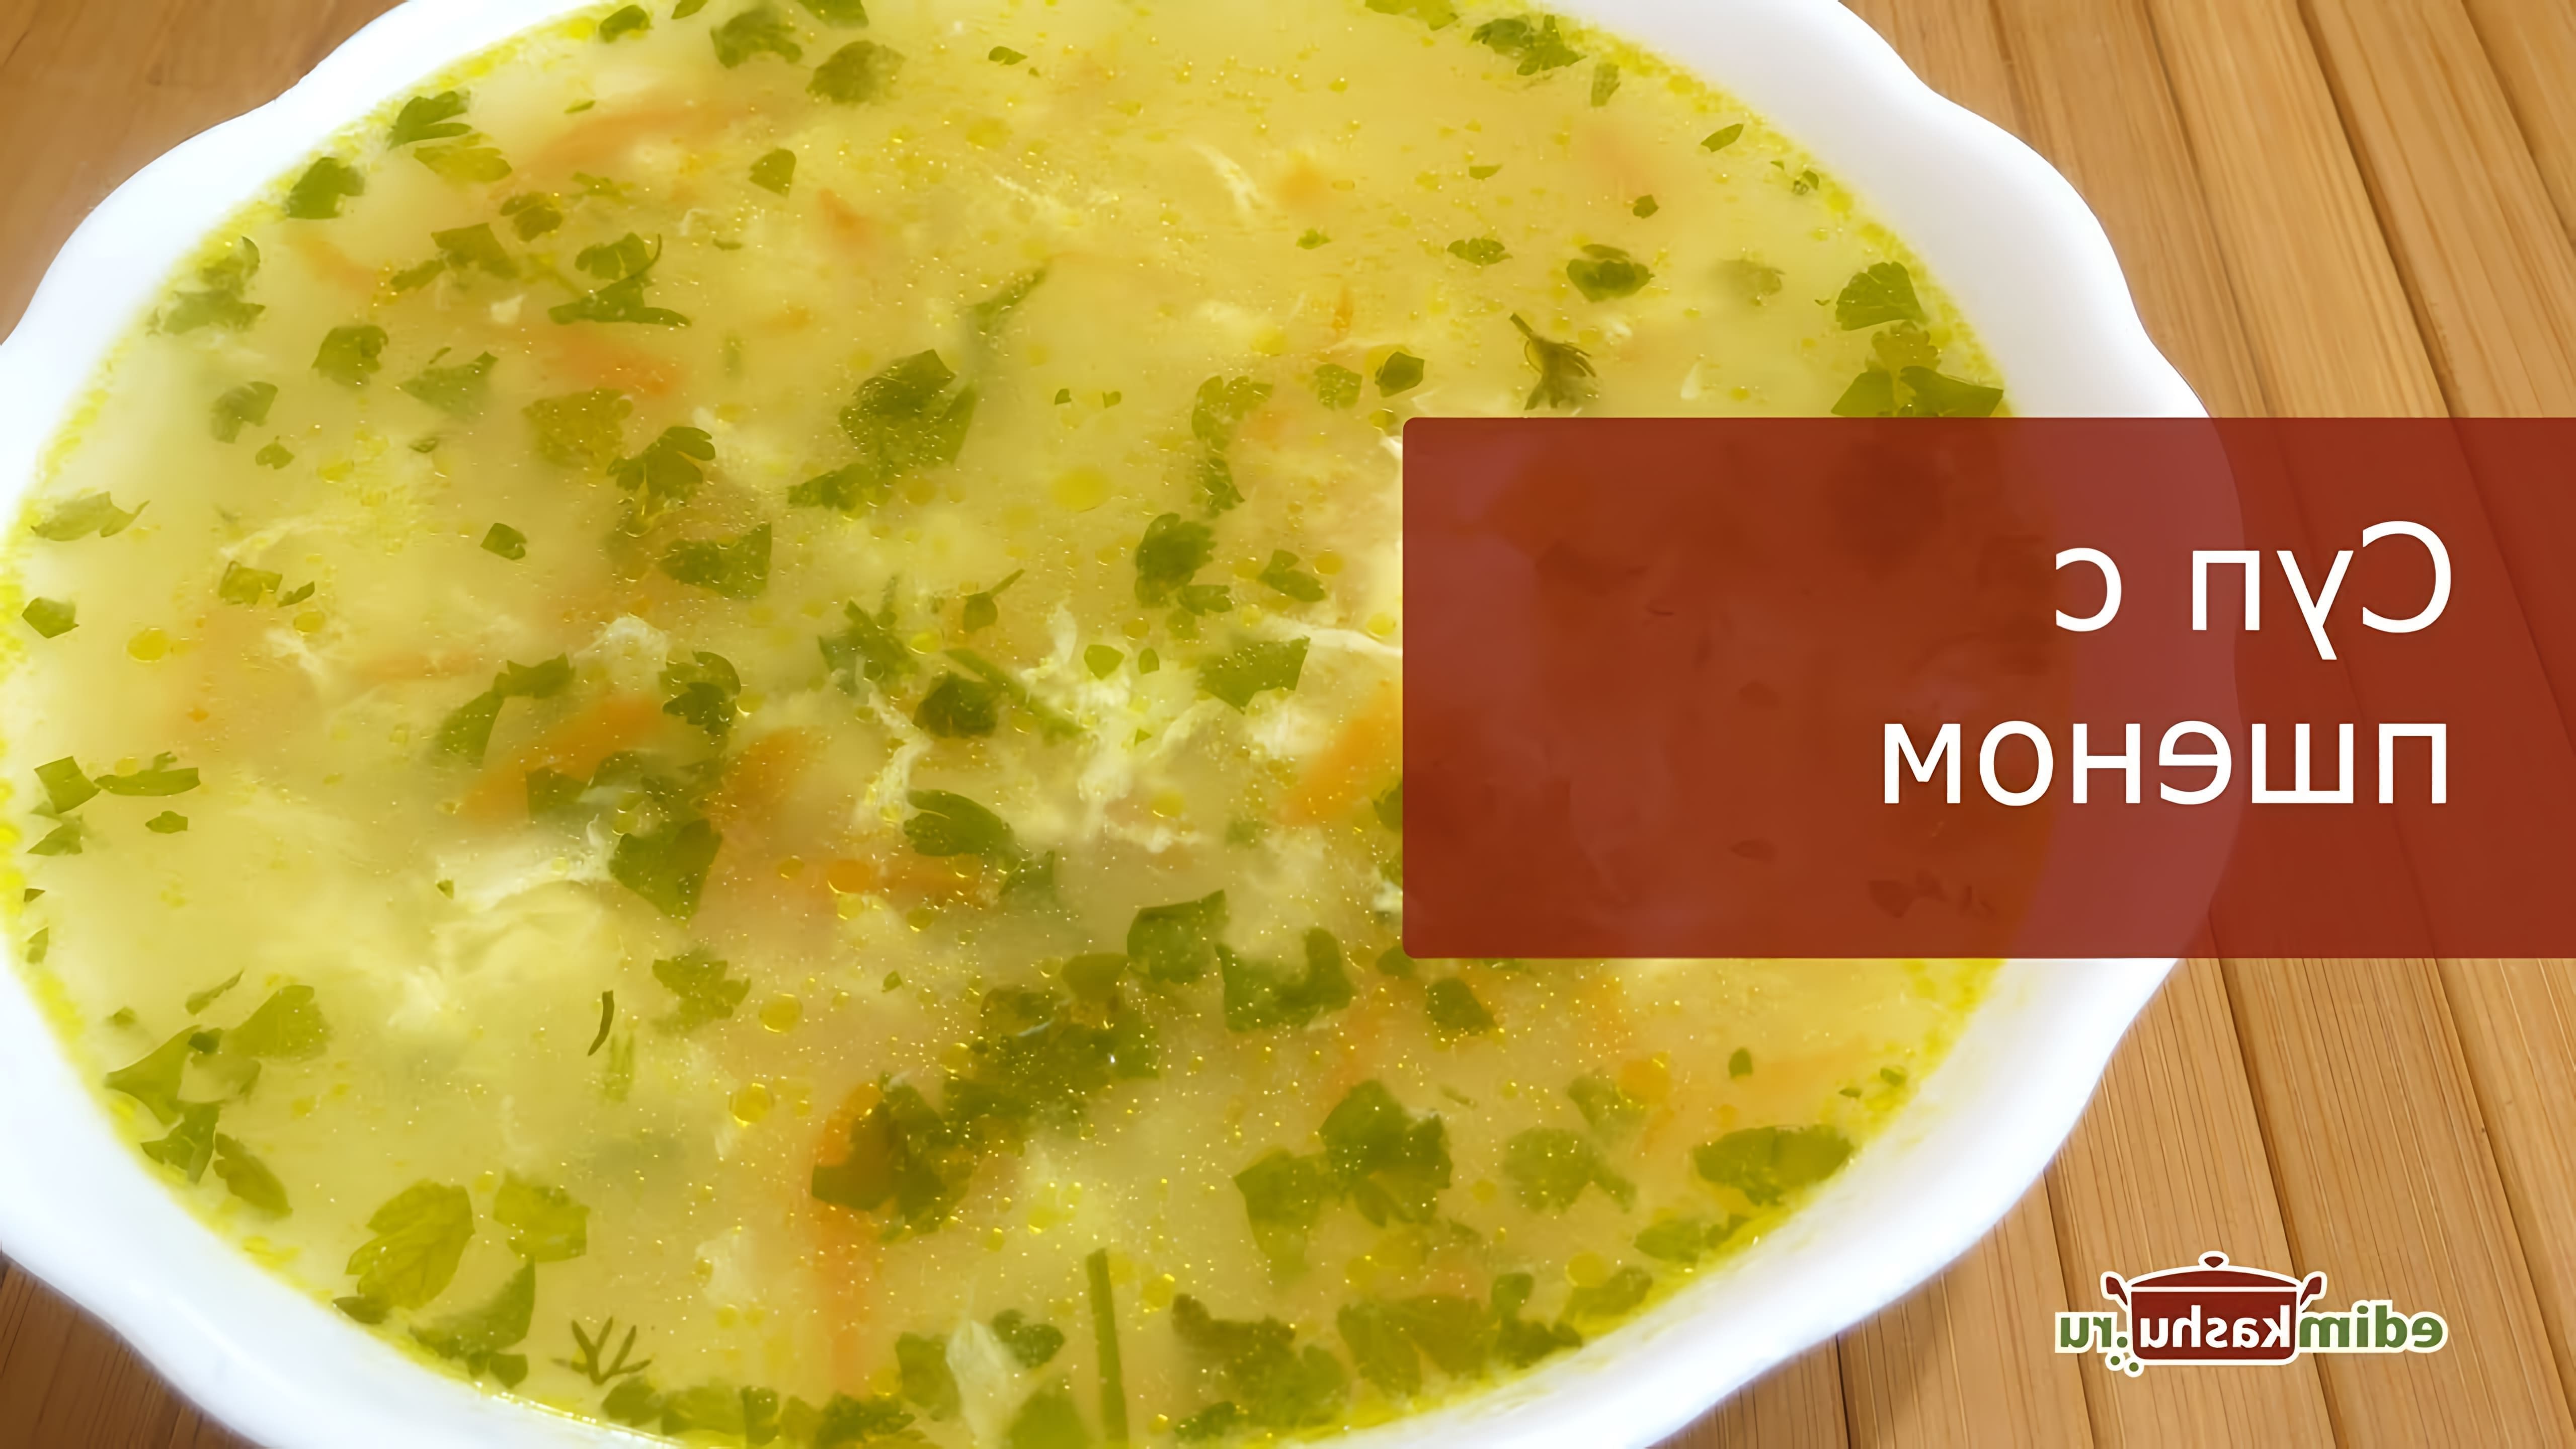 В этом видео демонстрируется рецепт приготовления вкусного и простого супа с пшенкой и яйцами